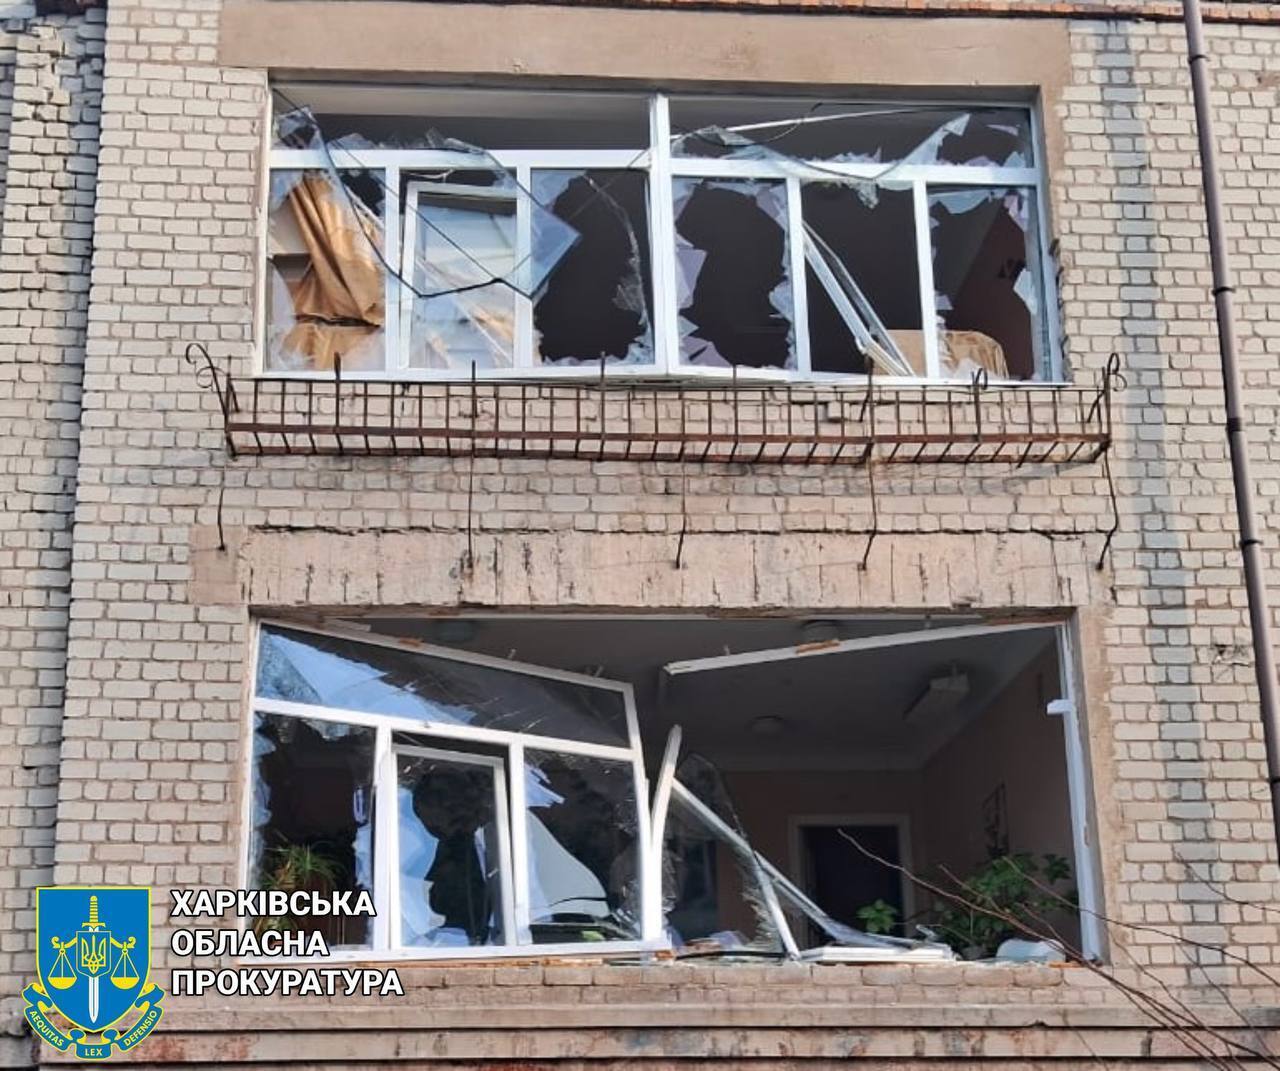 Пострадали спасатель и полицейский: появились новые детали ночных обстрелов Харькова. Фото